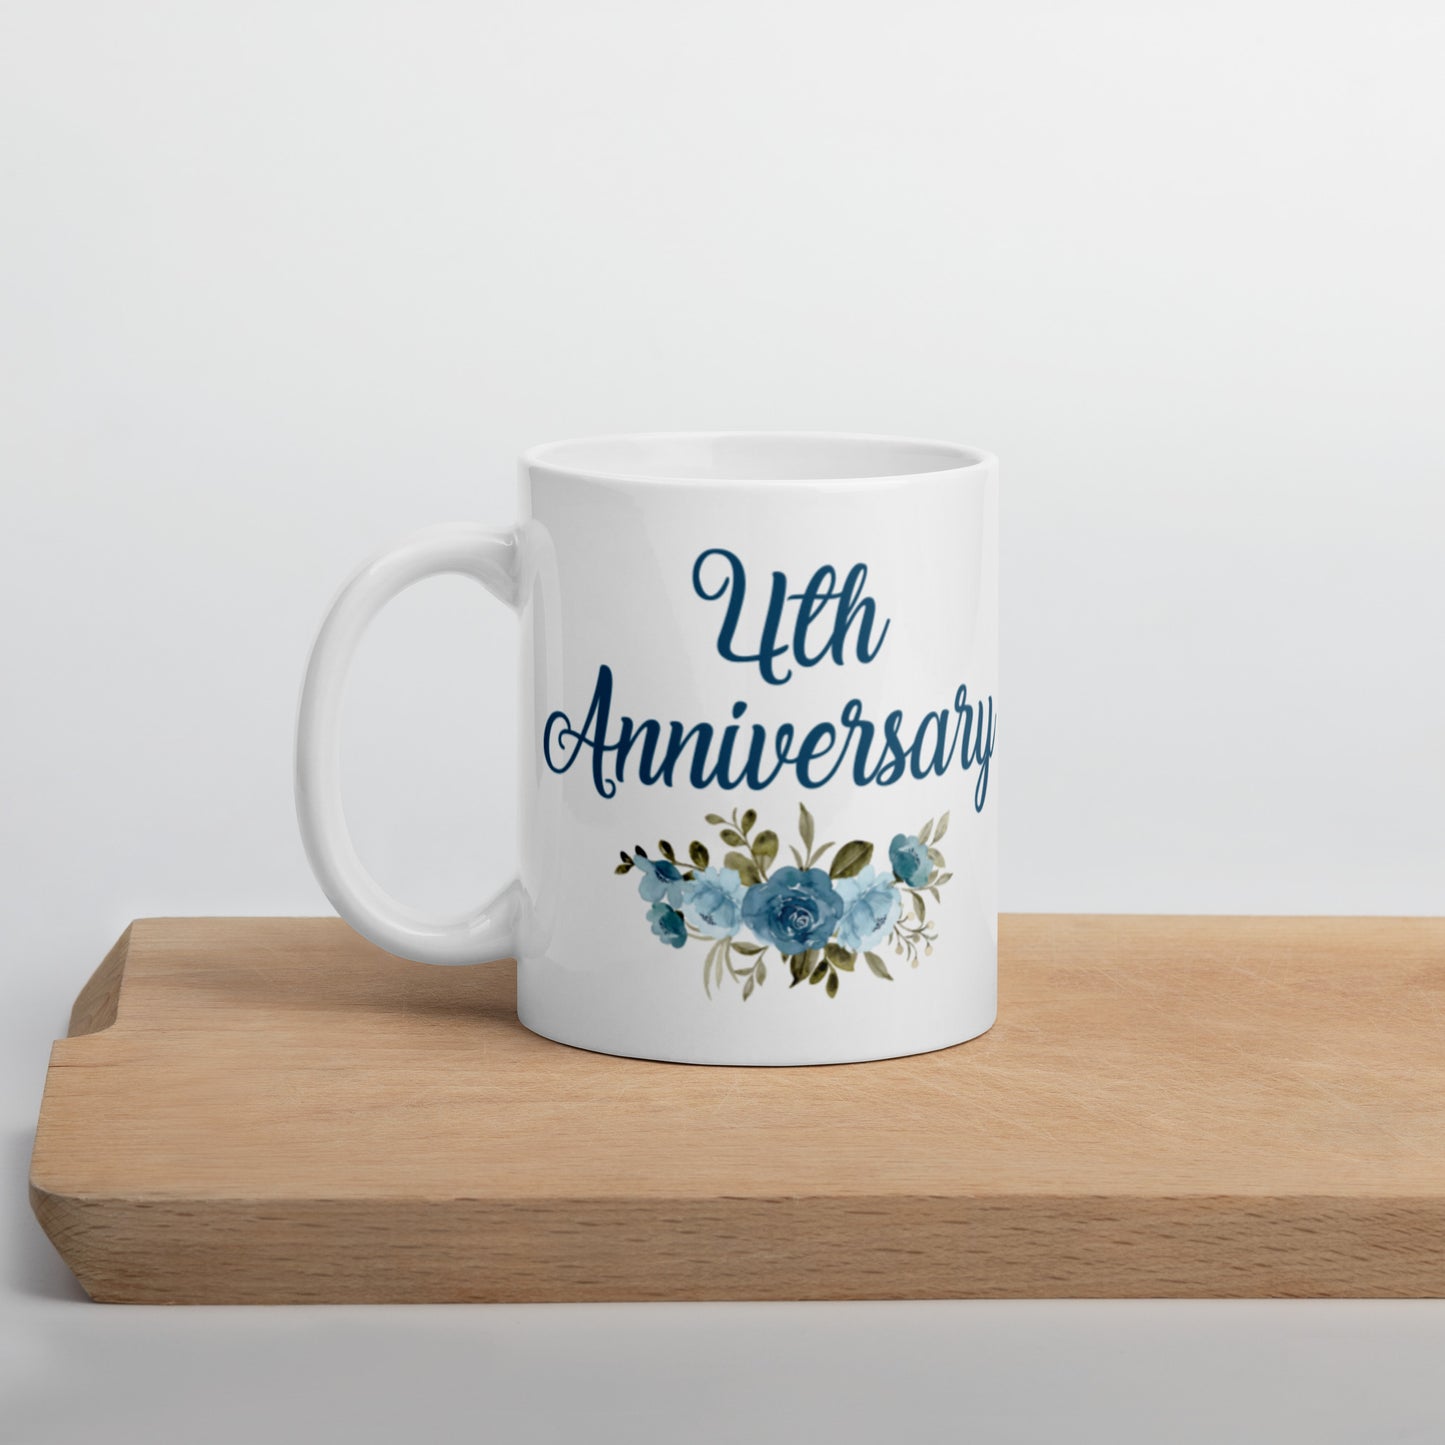 4th Anniversary White glossy mug